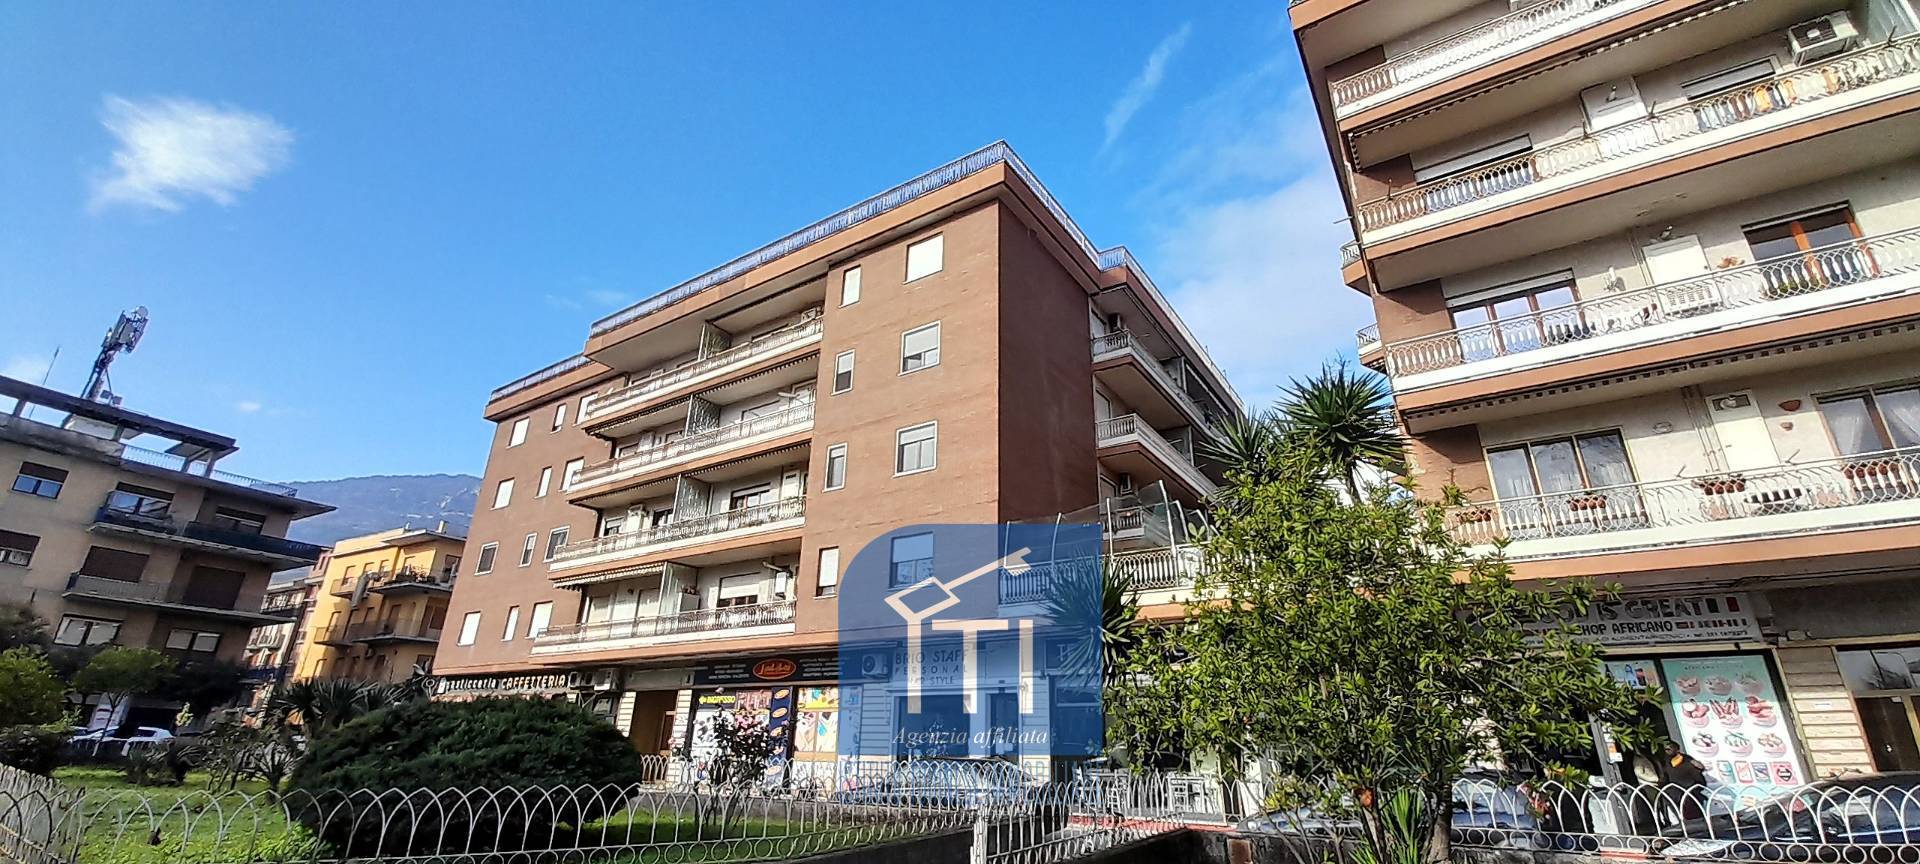 Appartamento in vendita a Cassino, 6 locali, prezzo € 199.000 | CambioCasa.it